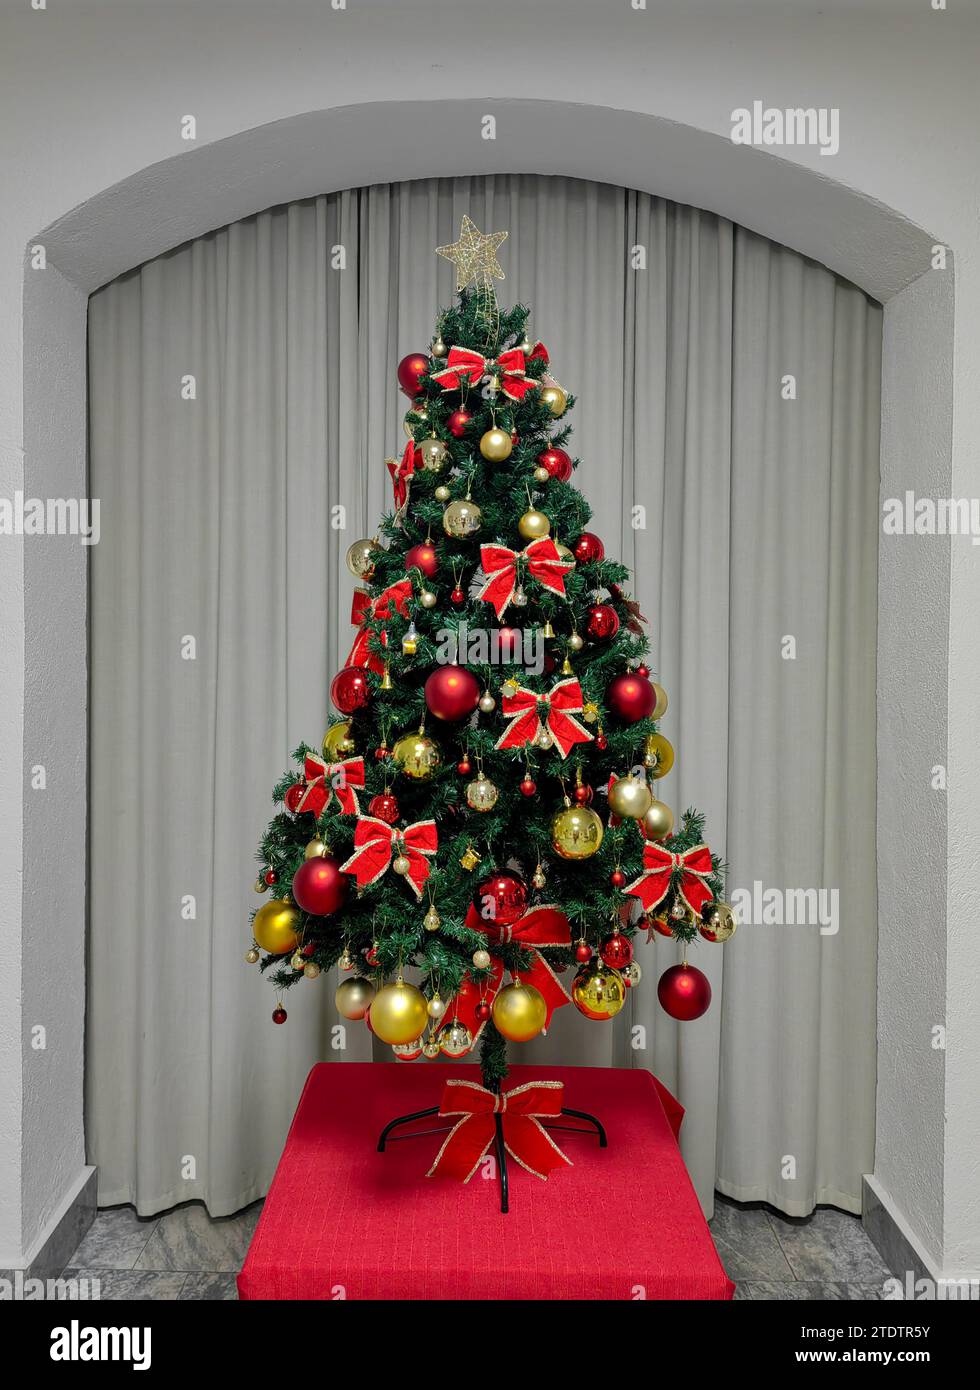 Élégance festive. Arbre de Noël dans le cadre de l'arche du hall. Banque D'Images